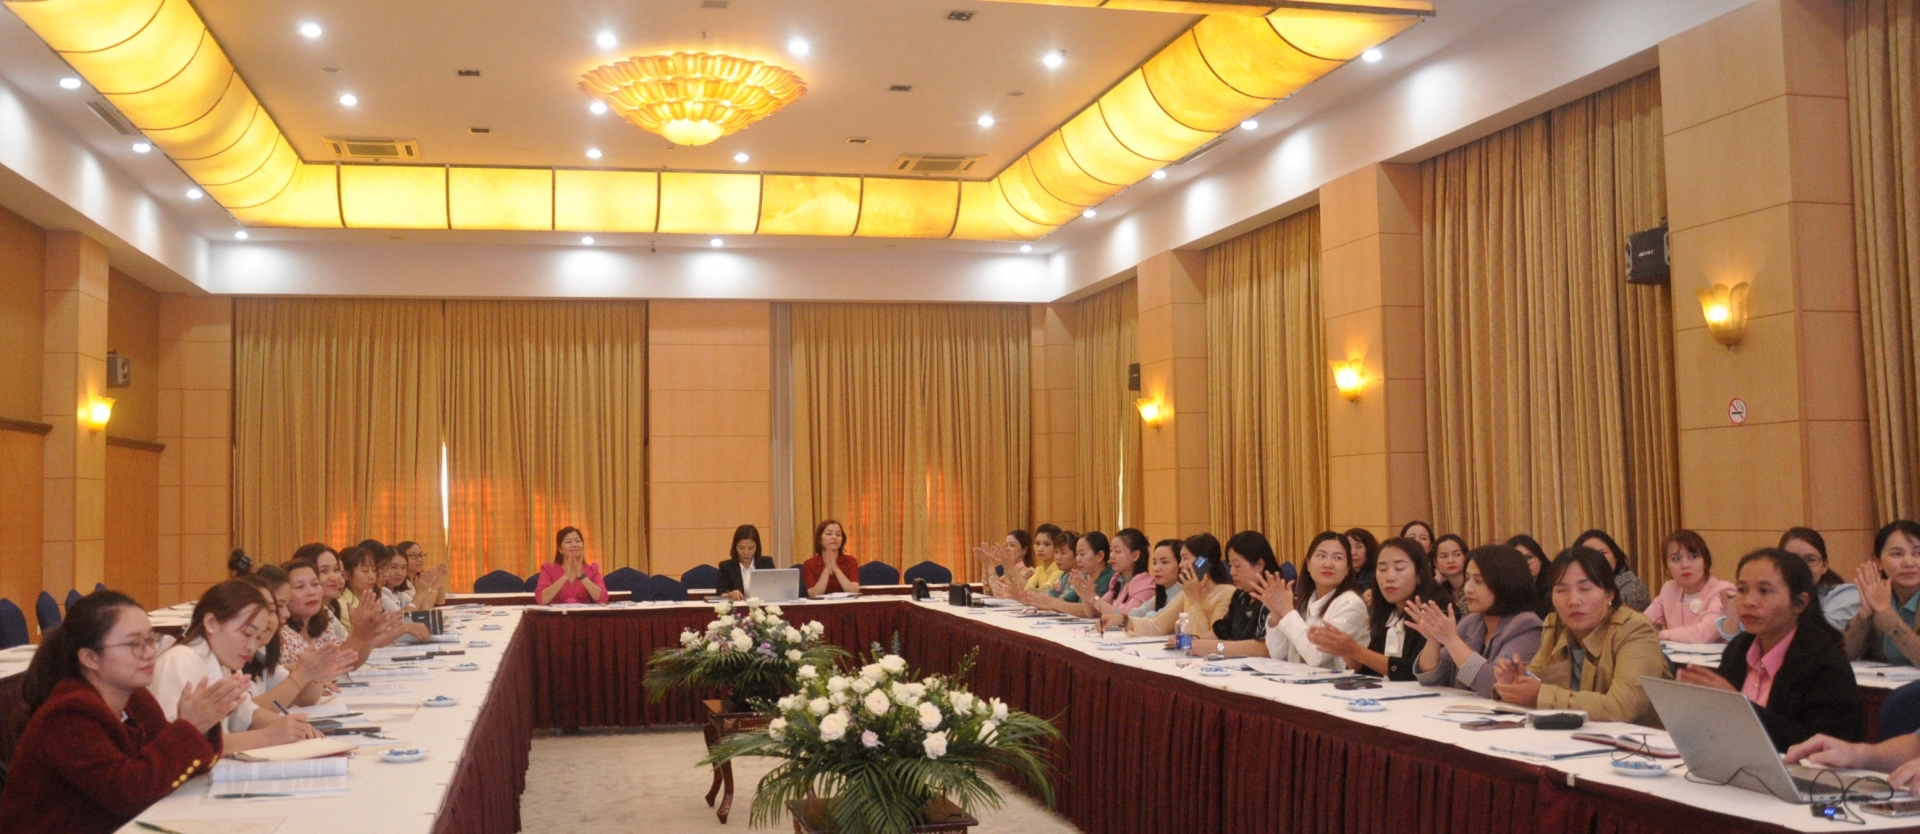 Hội thảo Nâng cao năng lực lồng ghép giới trong giáo dục mầm non và tăng cường tiếng Việt cho trẻ em vùng dân tộc thiểu số.